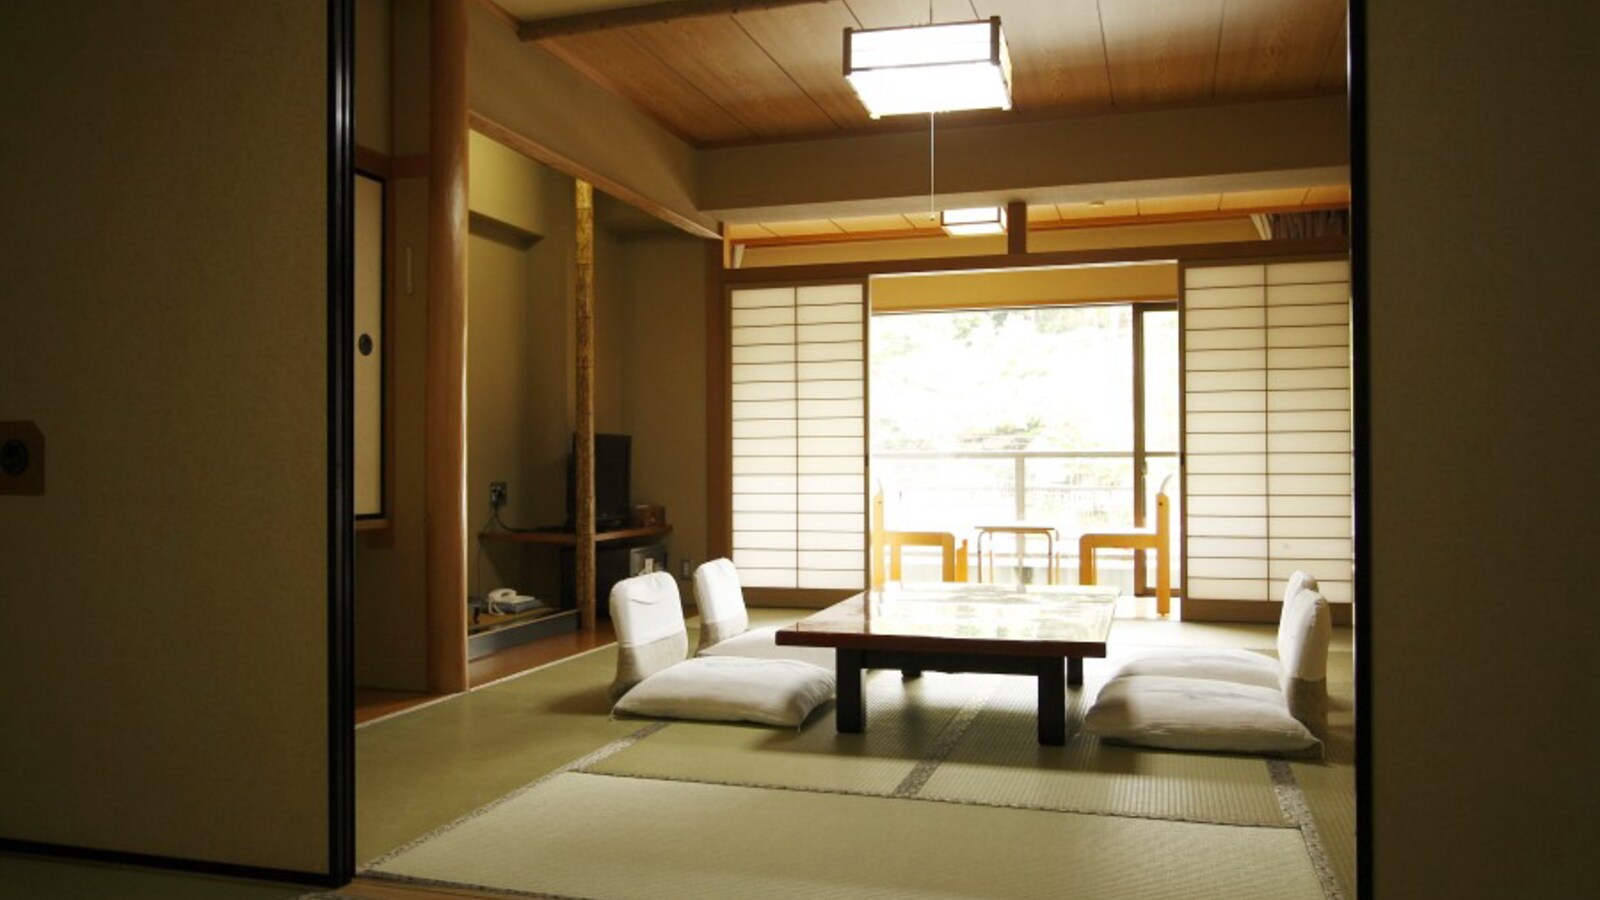 [ชั้น 2 (เสื่อทาทามิ 10 ผืน + เสื่อทาทามิ 6 ผืน) ห้องสไตล์ญี่ปุ่นพร้อมห้องถัดไป] มีบริการอาหารภายในห้องพักและสามารถนำสัตว์เลี้ยงเข้าพักได้ทุกห้อง